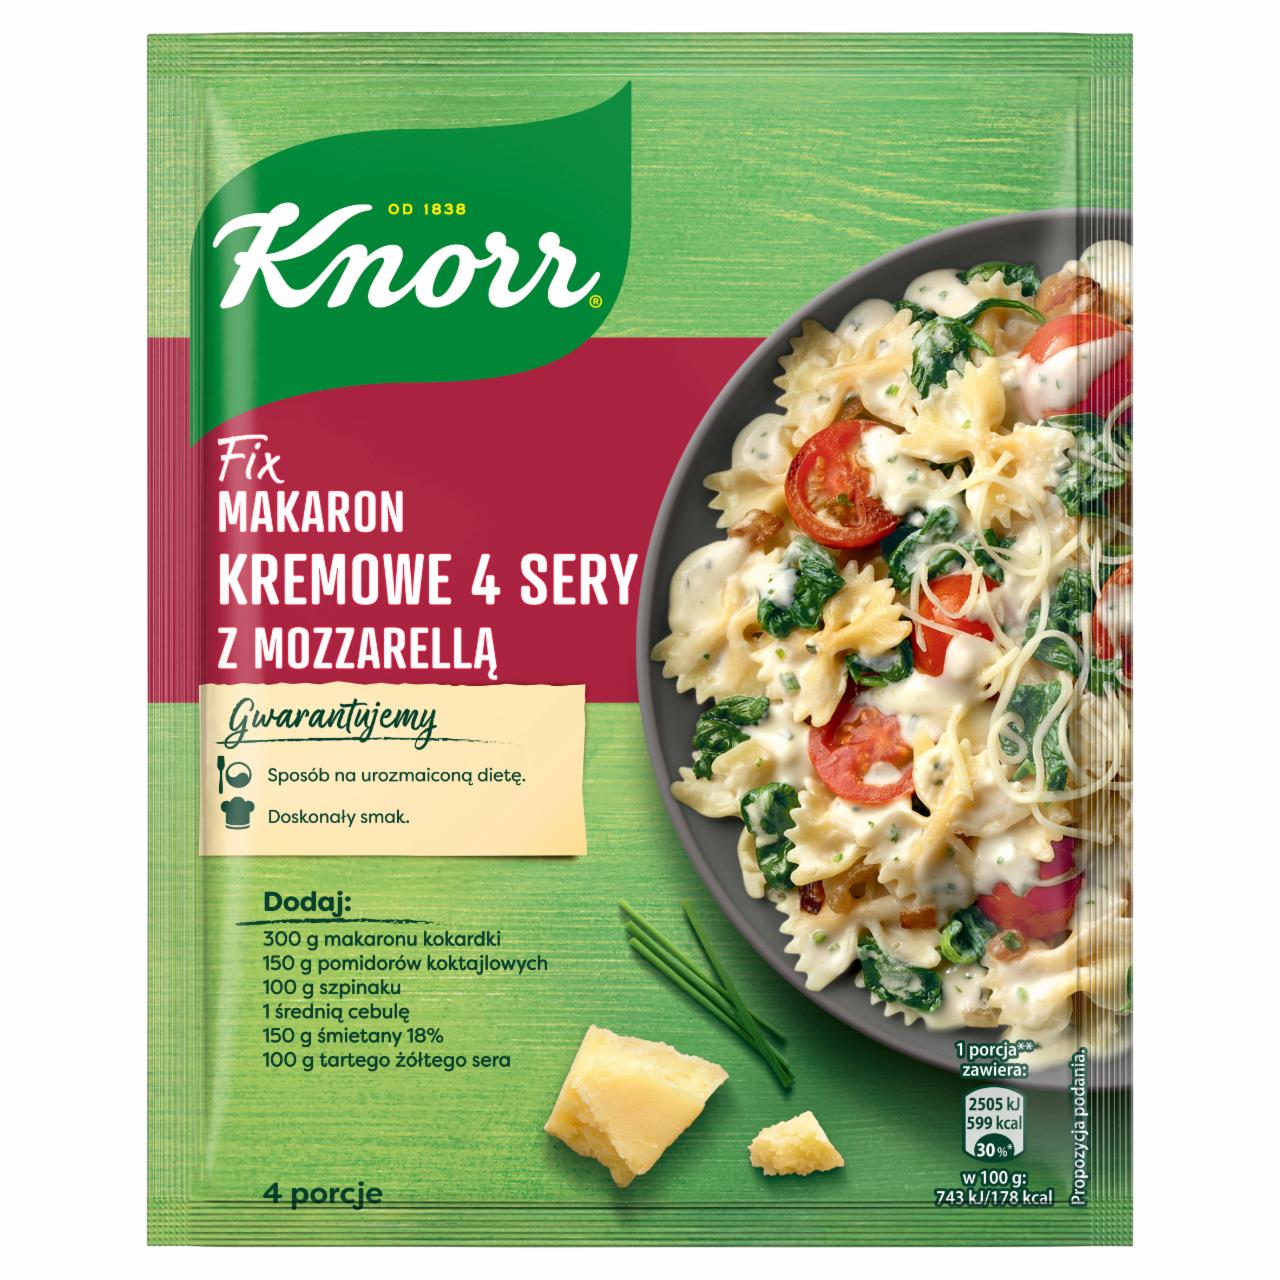 Zdjęcia - Knorr Fix makaron kremowe 4 sery z mozzarellą 45 g